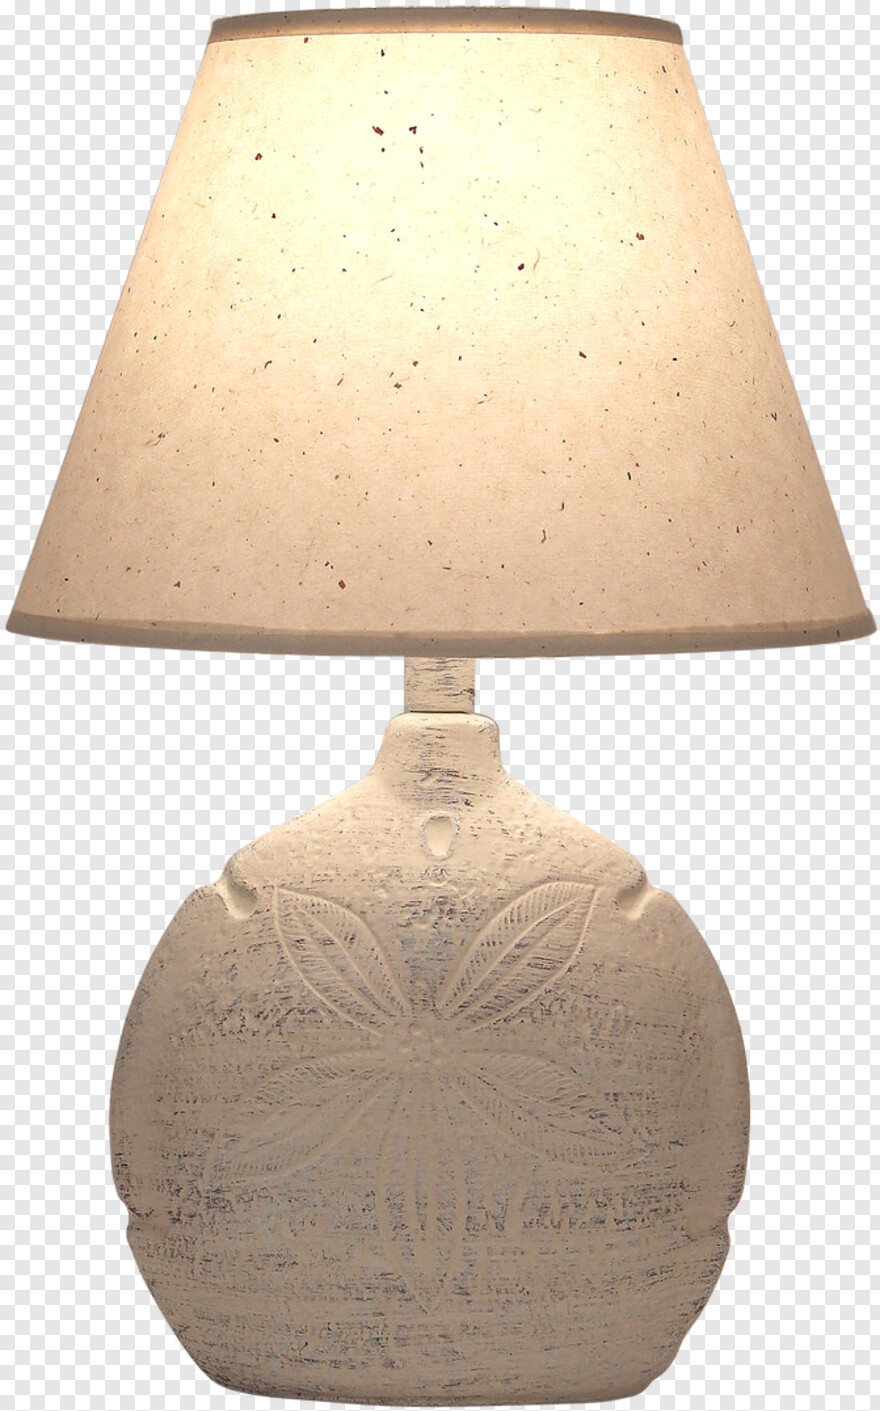 pixar-lamp # 724810